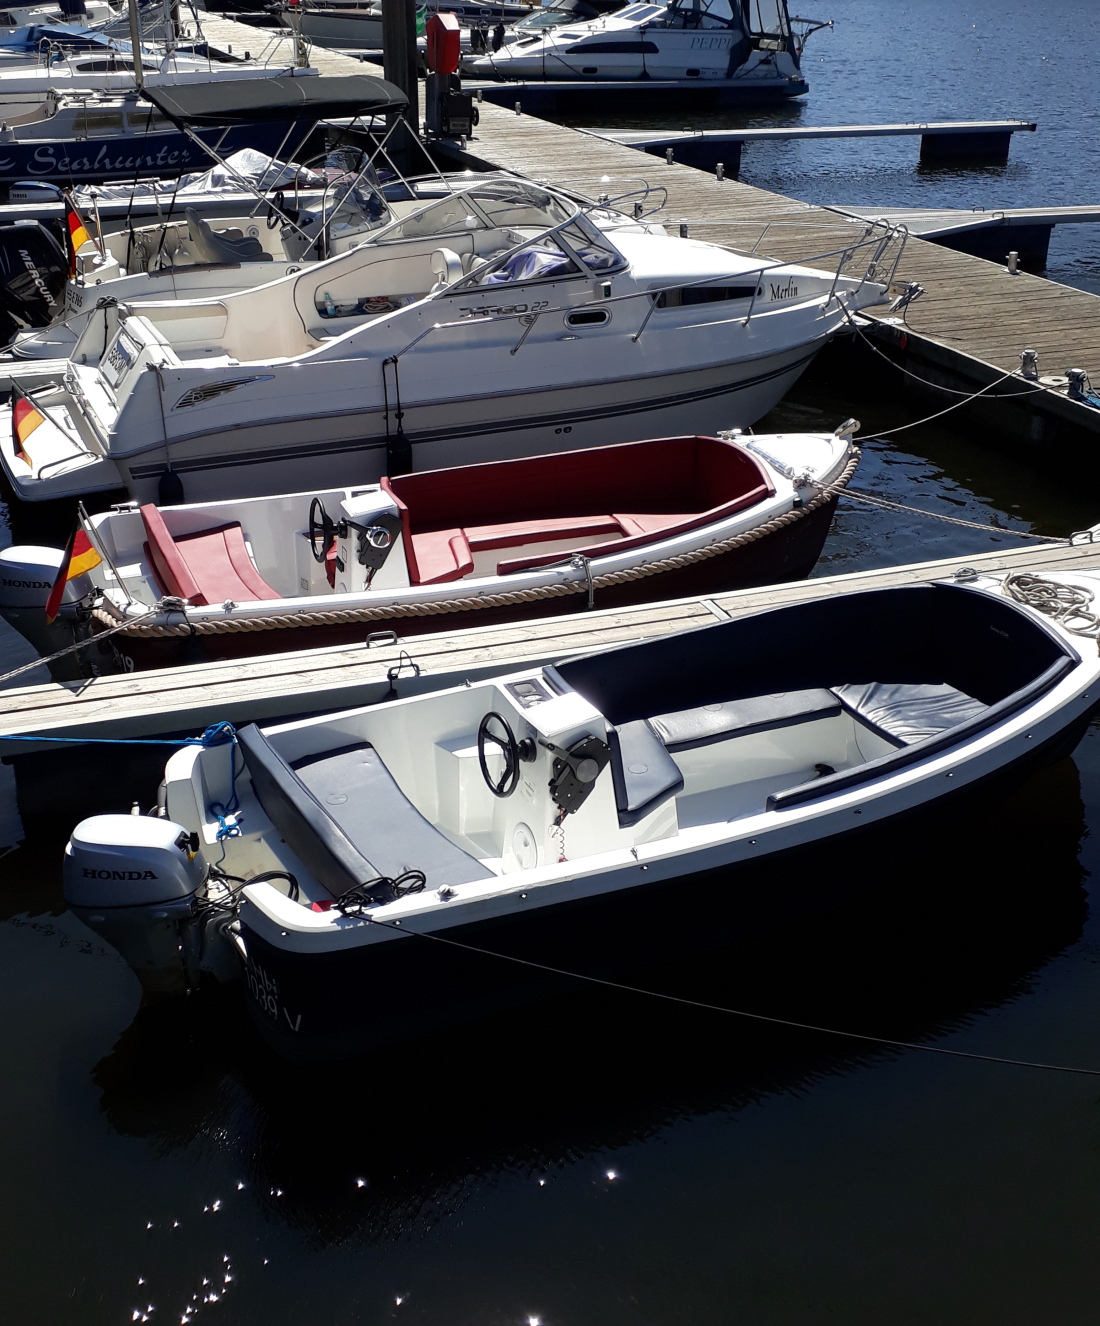 Die Motorboote der Hansa-Charter Motorbootvermietung liegen in der Marina Europahafen.